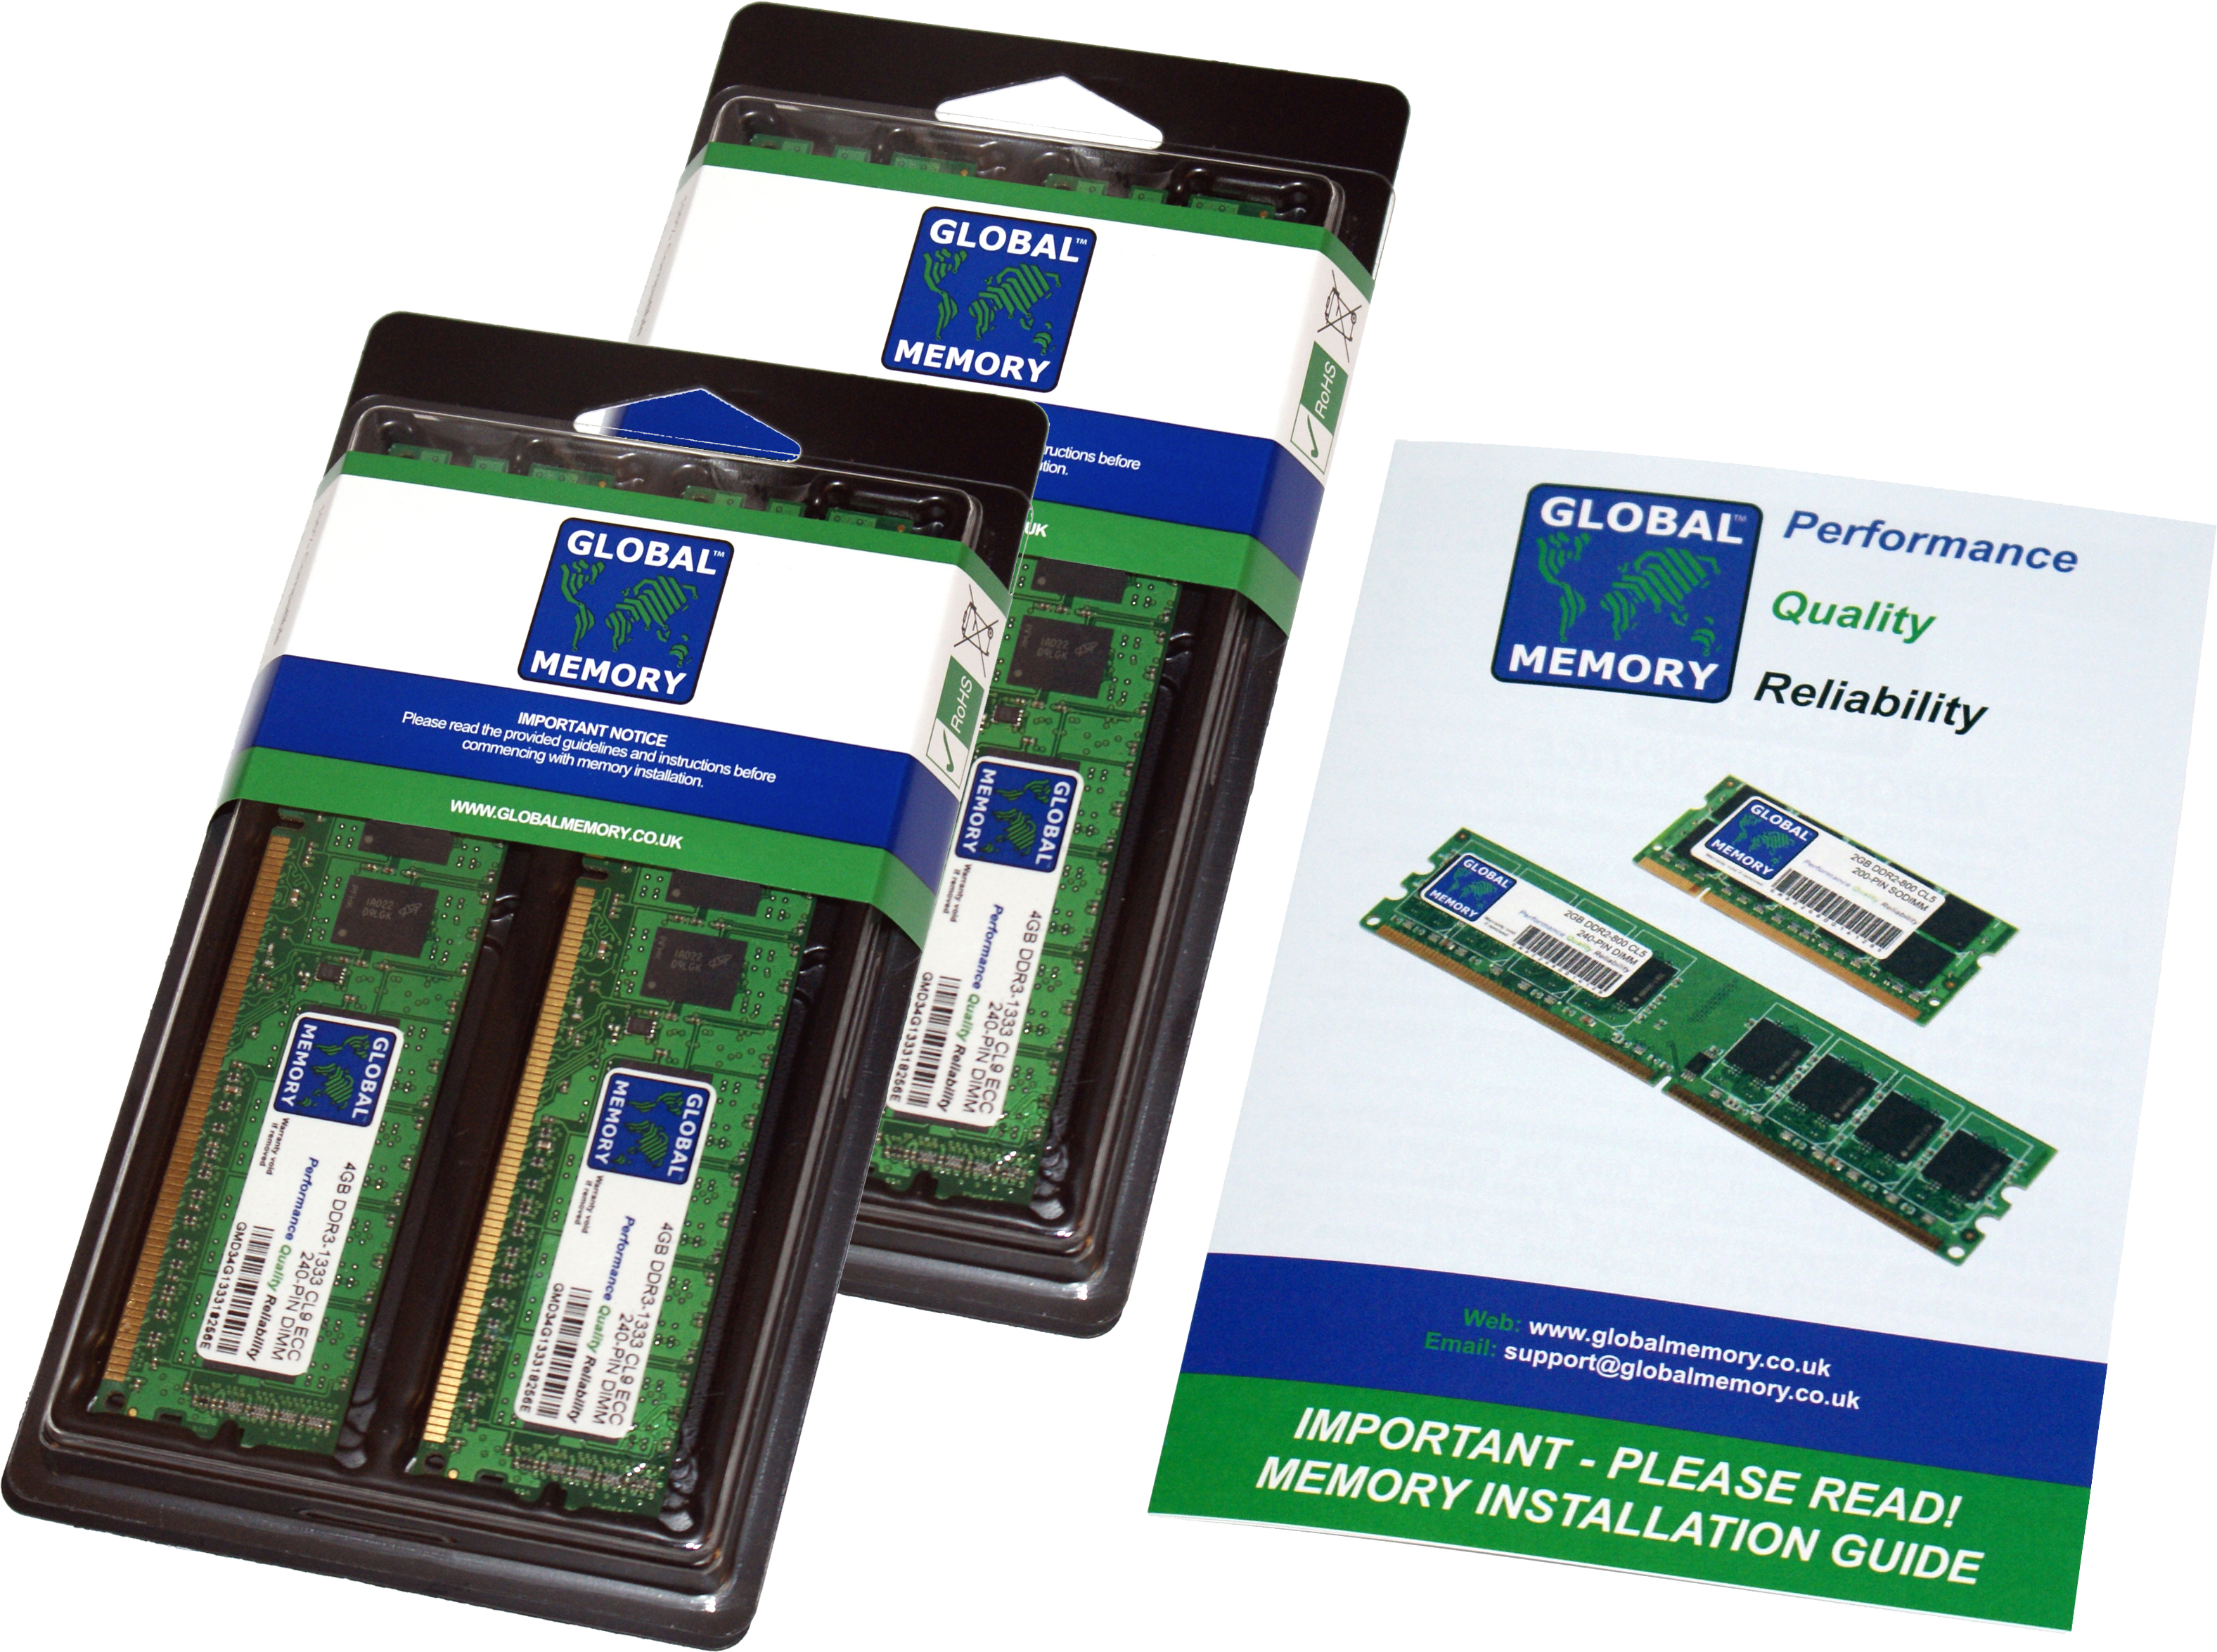 64GB (4 x 16GB) DDR4 2400MHz PC4-19200 288-PIN ECC DIMM (UDIMM) MEMORY RAM KIT FOR HEWLETT-PACKARD SERVERS/WORKSTATIONS